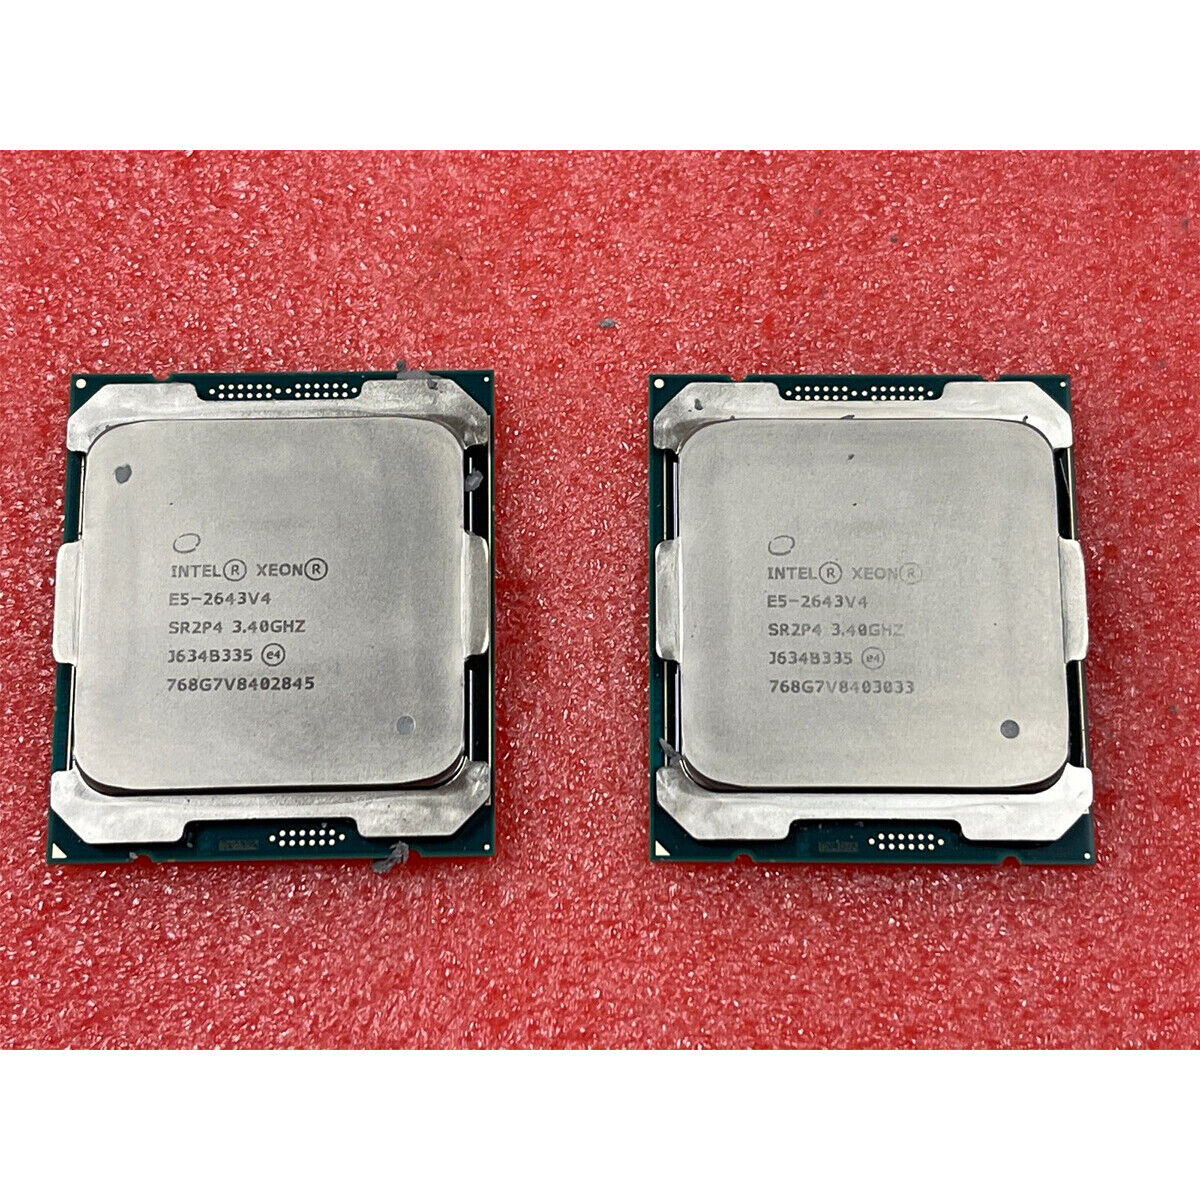 Matched Pair Intel Xeon E5-2683 V4 E5-2667 V4 E5-2643 V4 E5-2637V4 LGA2011-3 CPU